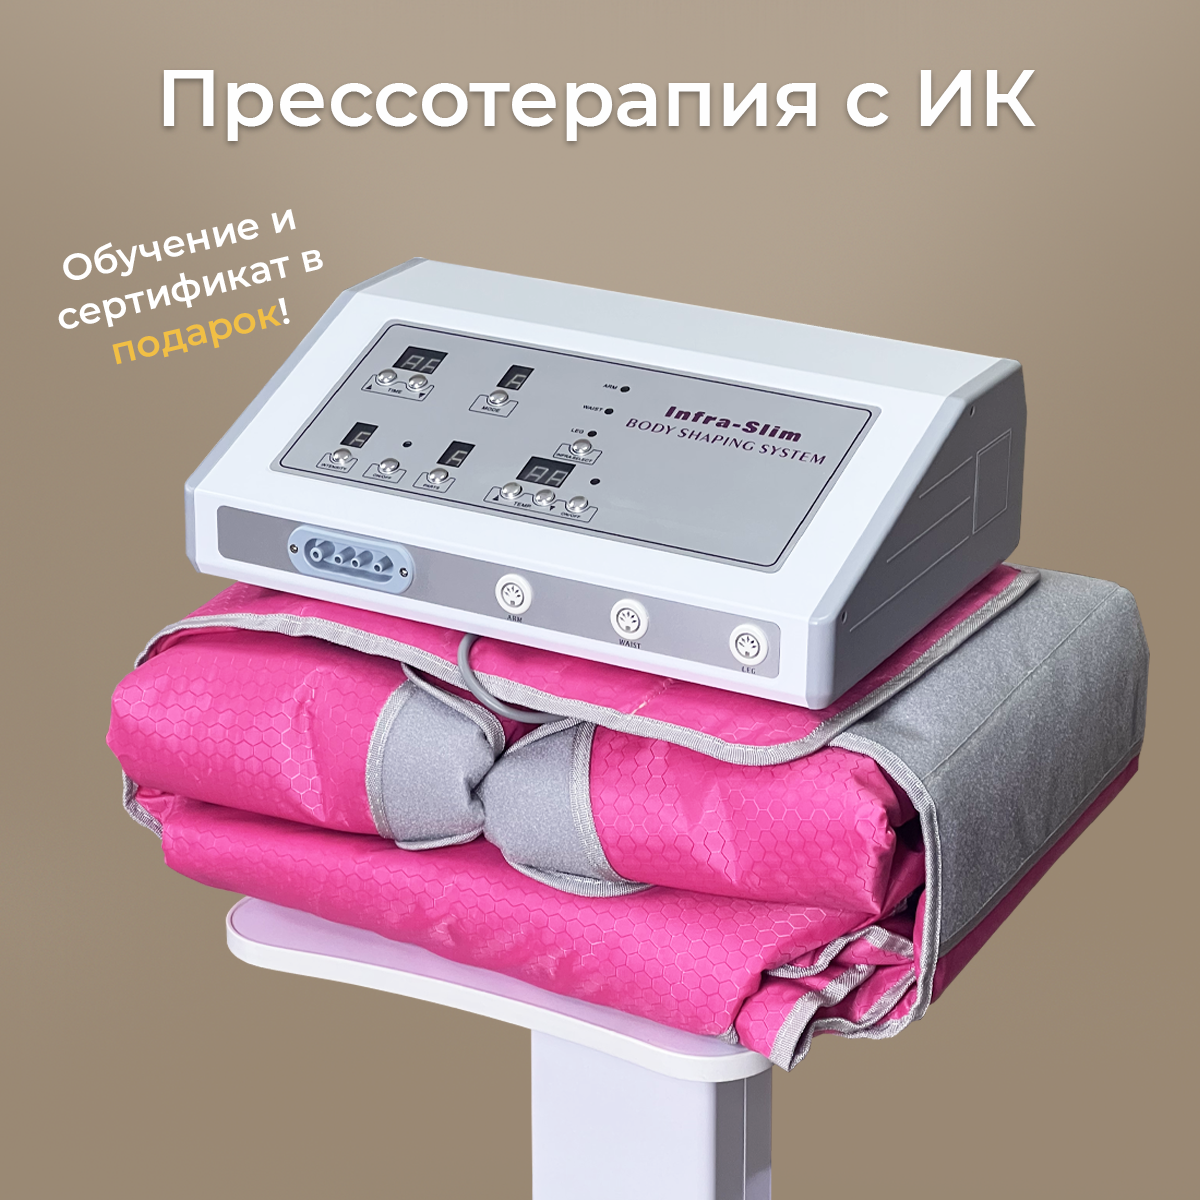 Аппарат прессотерапии с инфракрасным прогревом (Розовый)